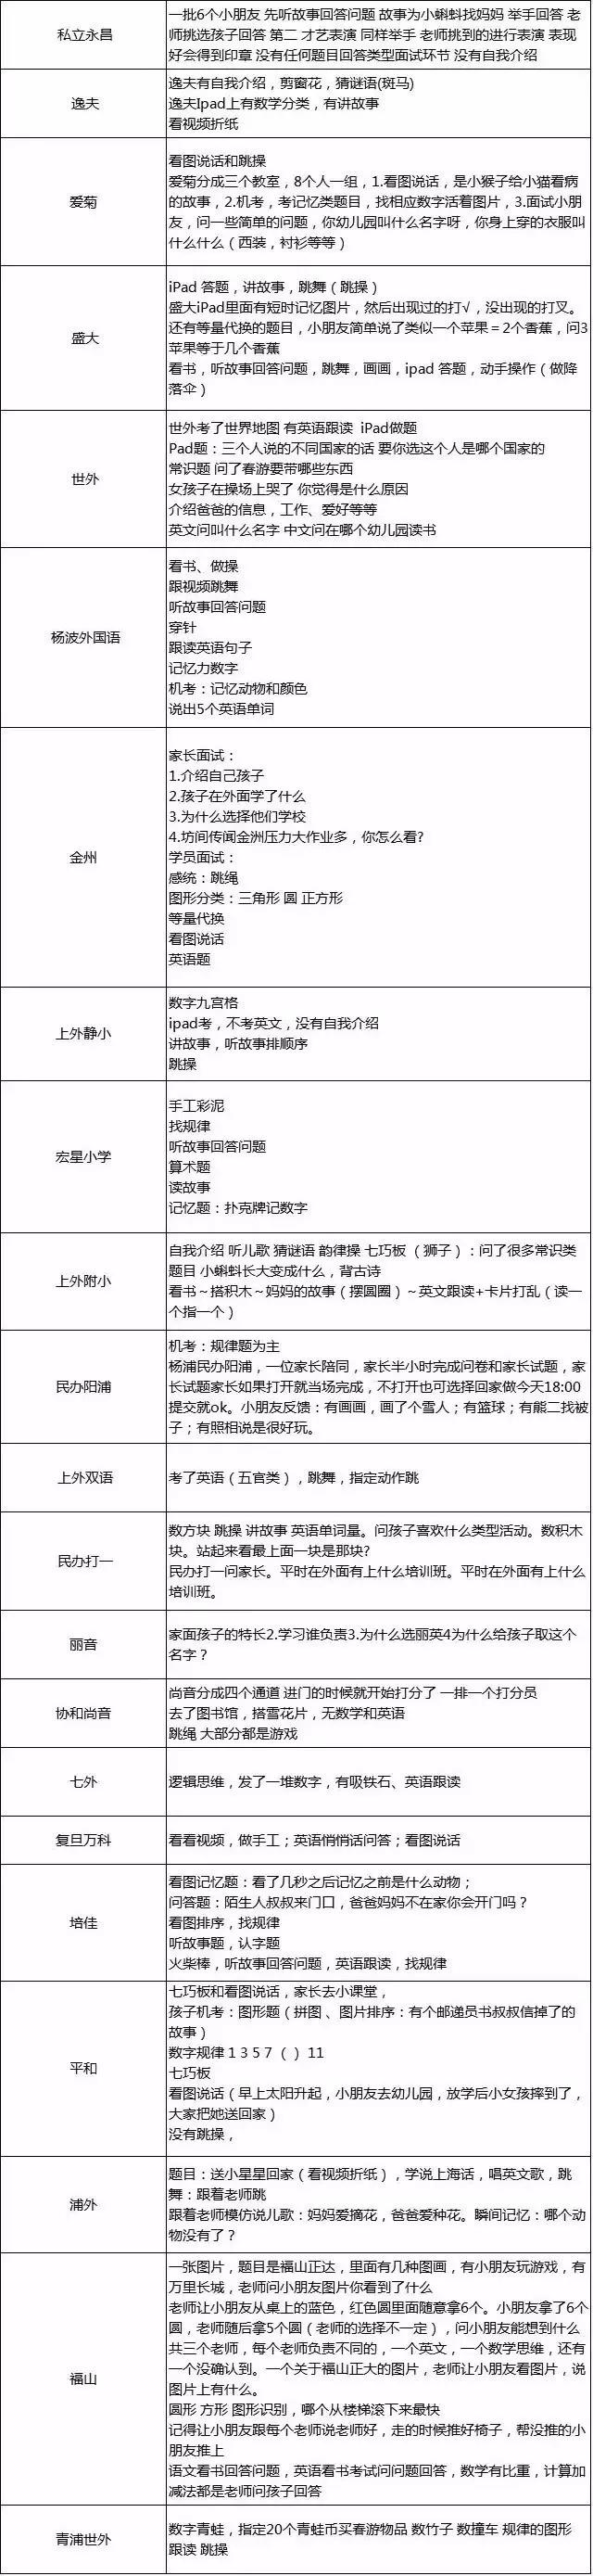 2018年上海幼升小时间规划及报名详细信息